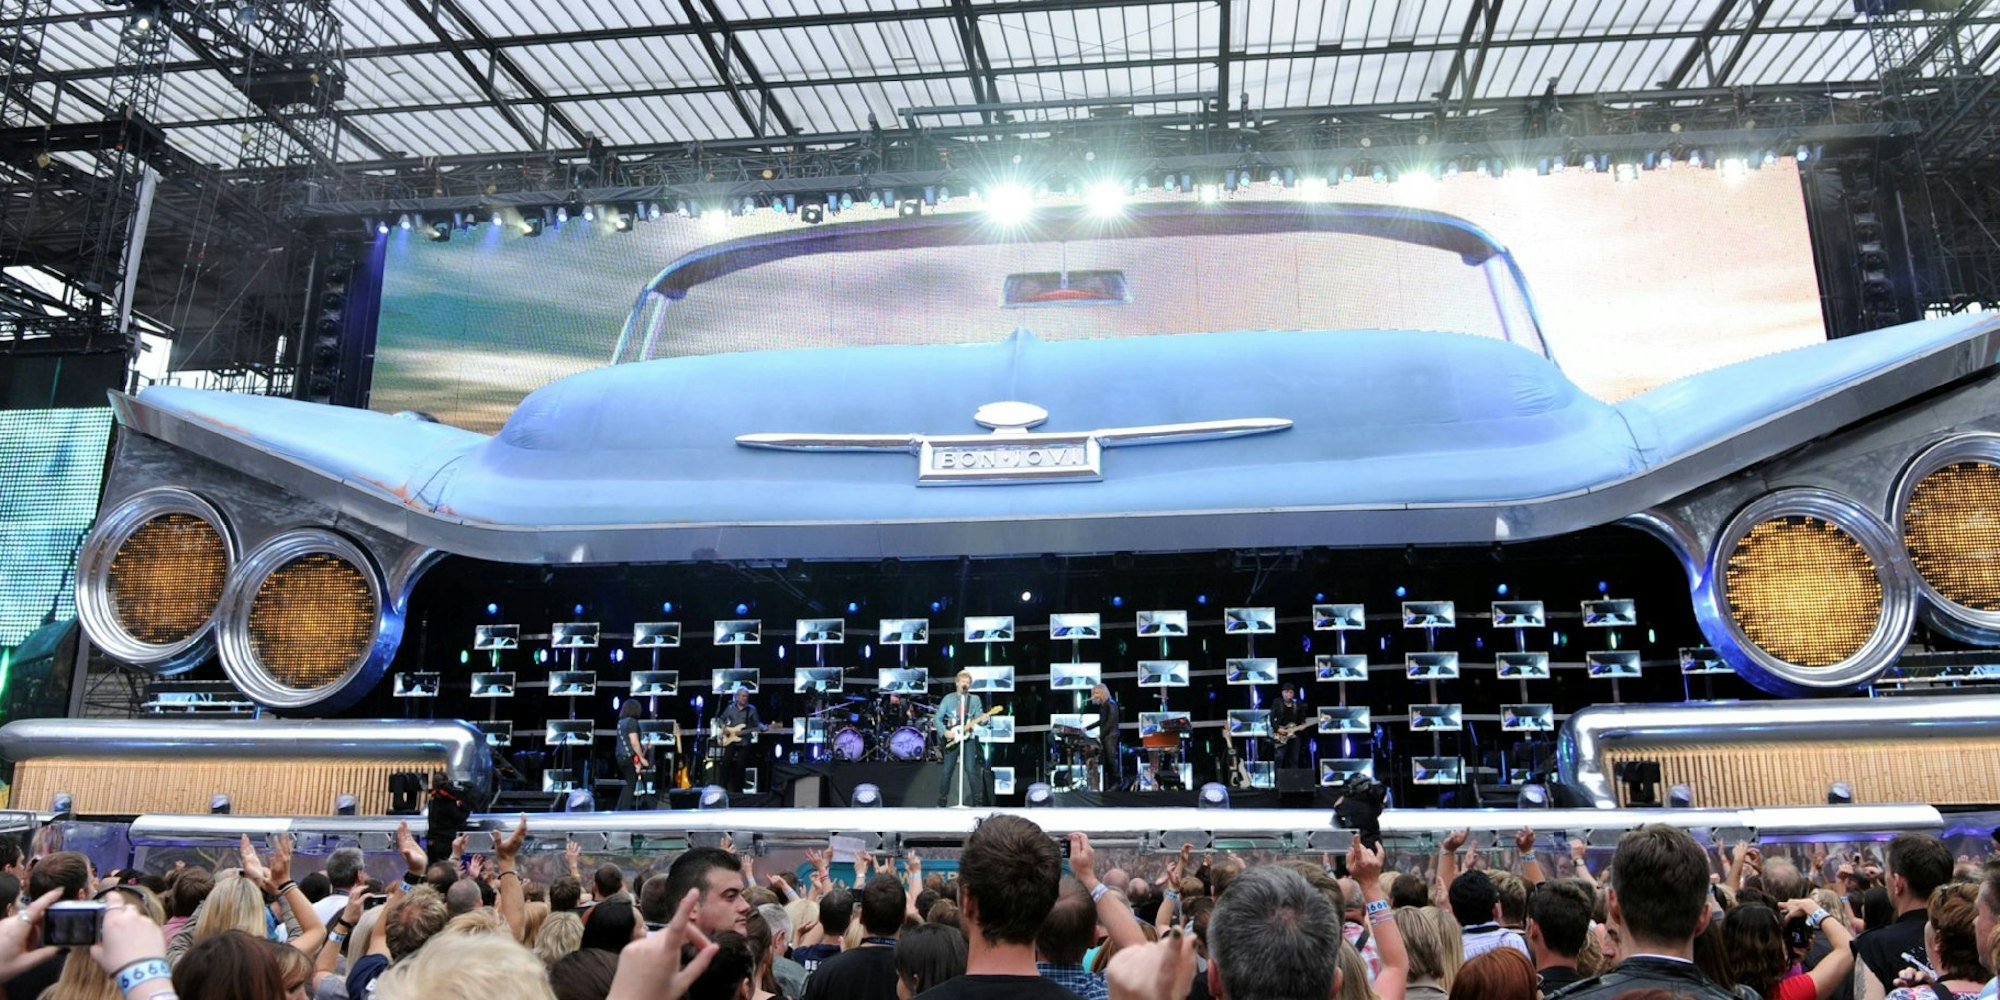 Kaum zu sehen vor der riesenhaften Bühnenkonstruktion: Jon Bon Jovi bei seinem Konzert im Kölner Rhein-Energie-Stadion.